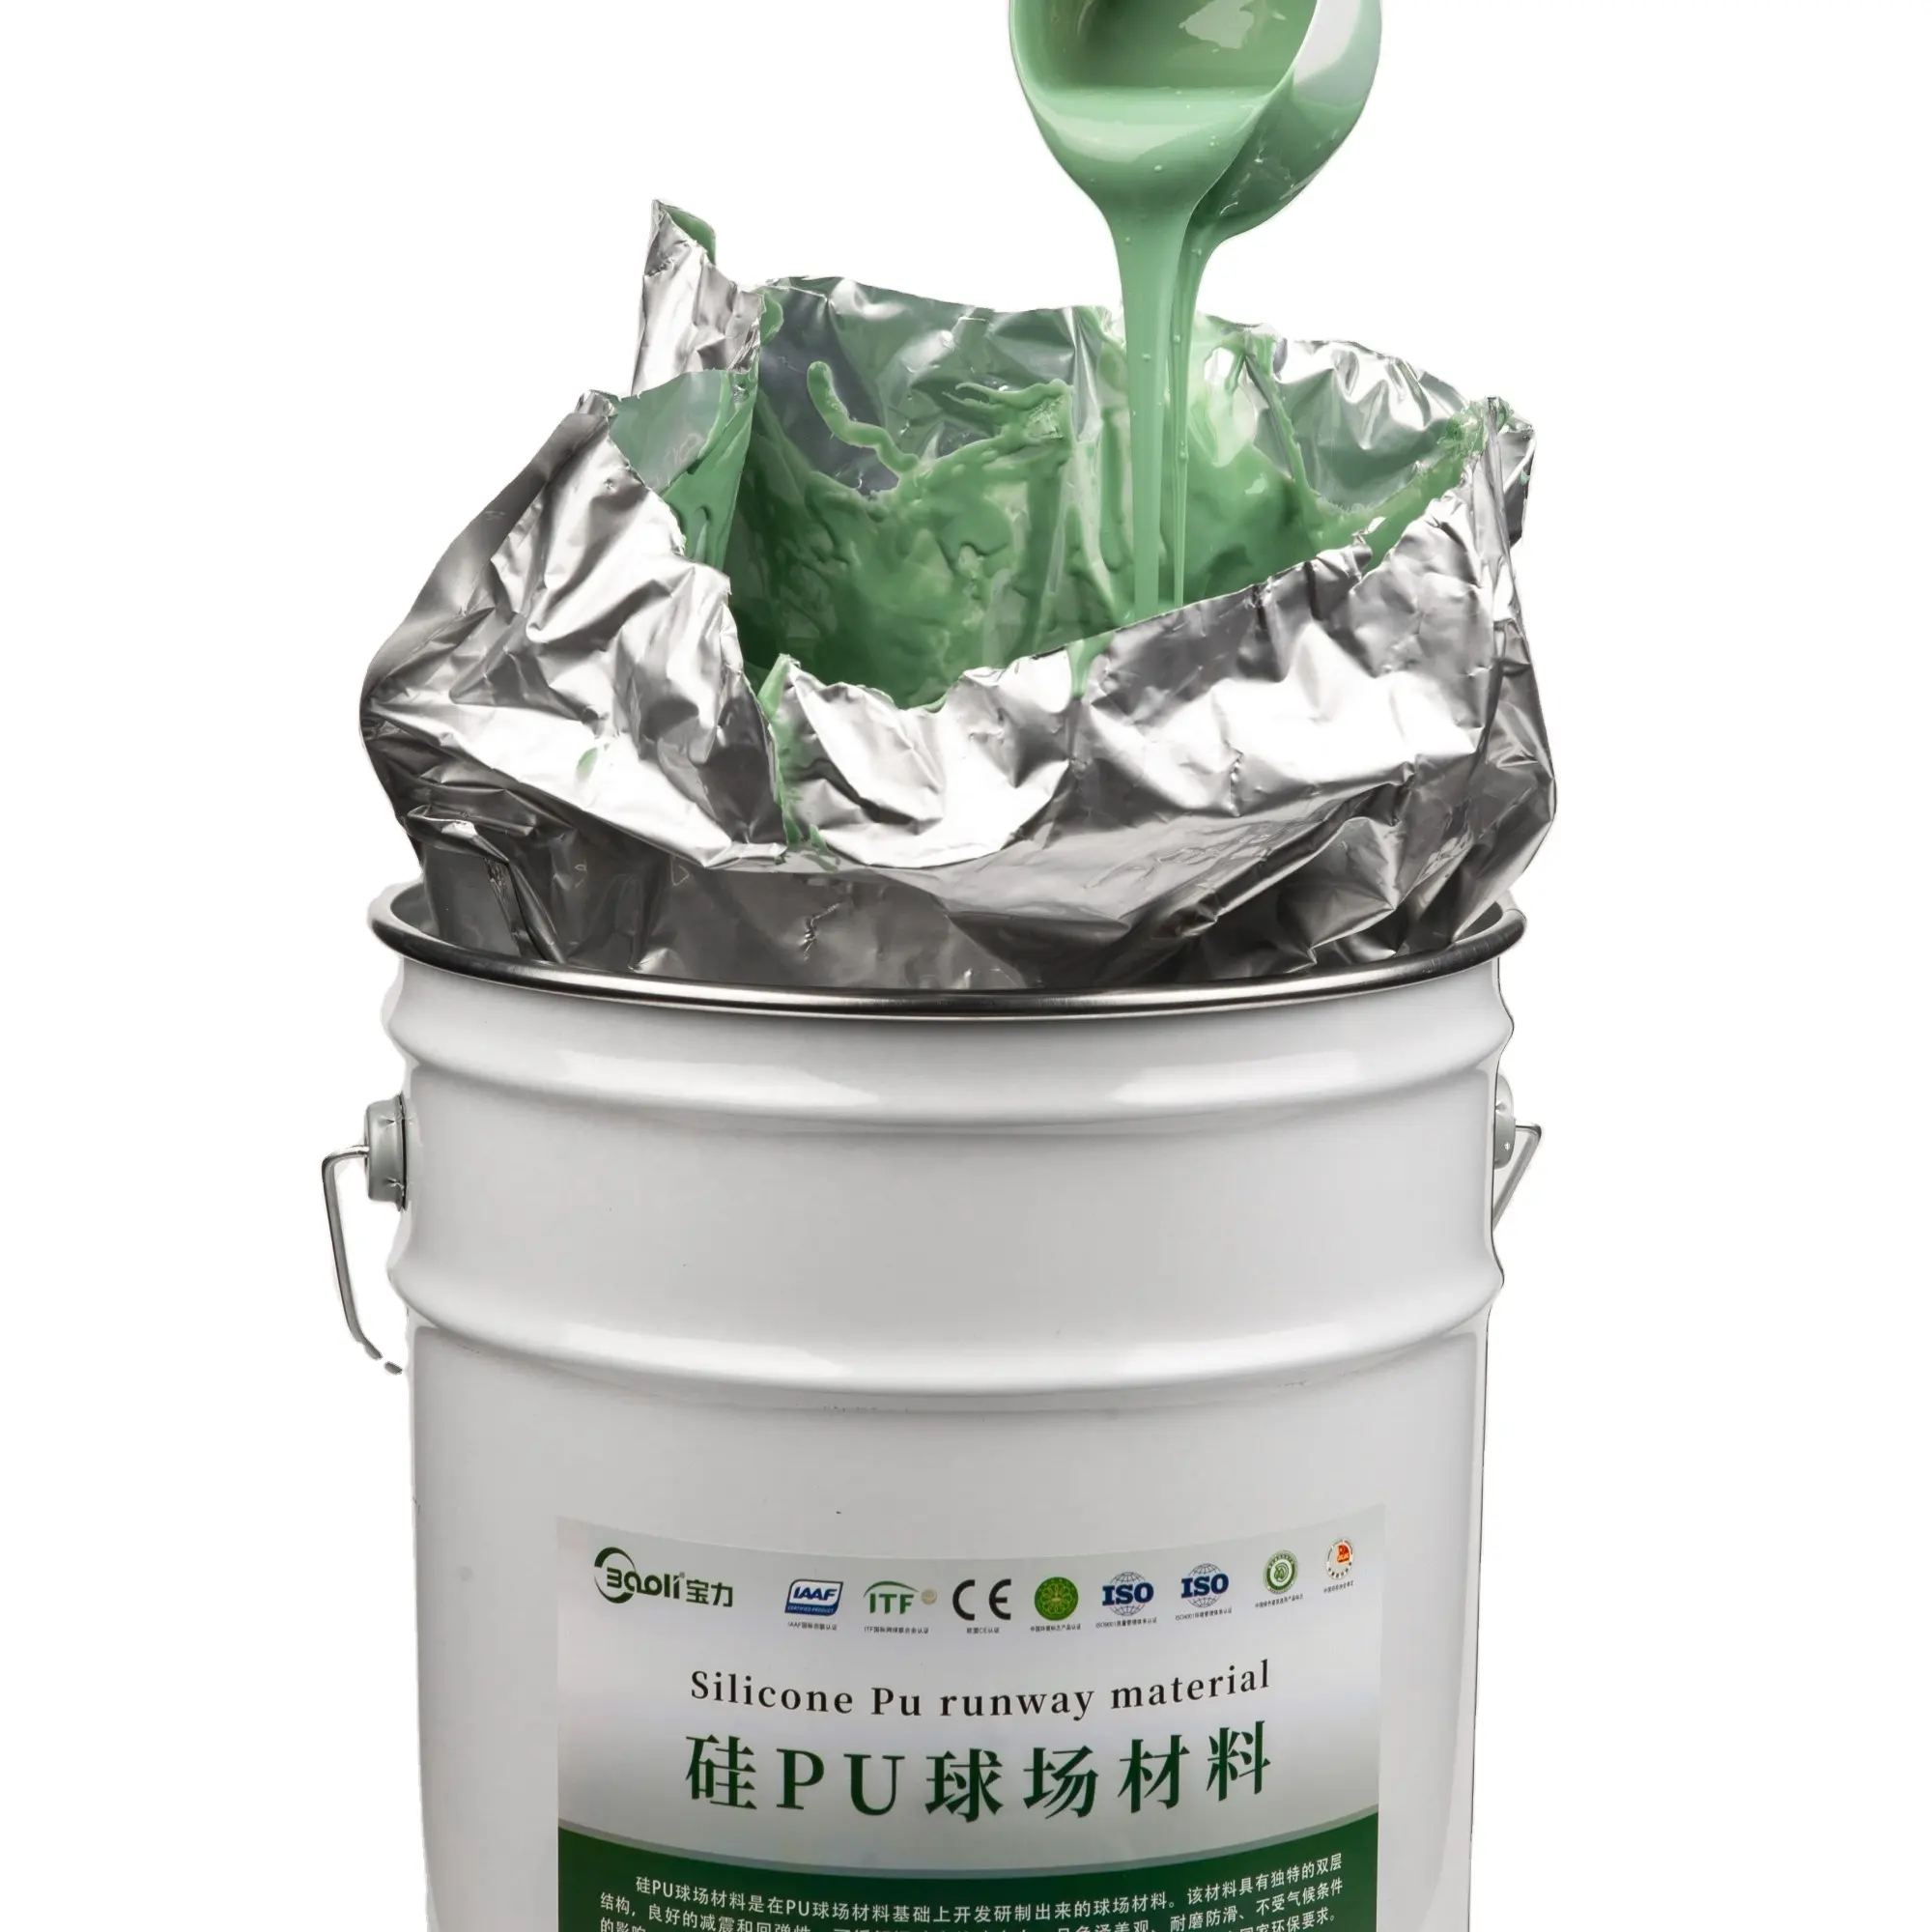 Baoli jual panas penyegel poliuretan silikon dua komponen, perekat cat keselamatan hijau perlindungan lingkungan